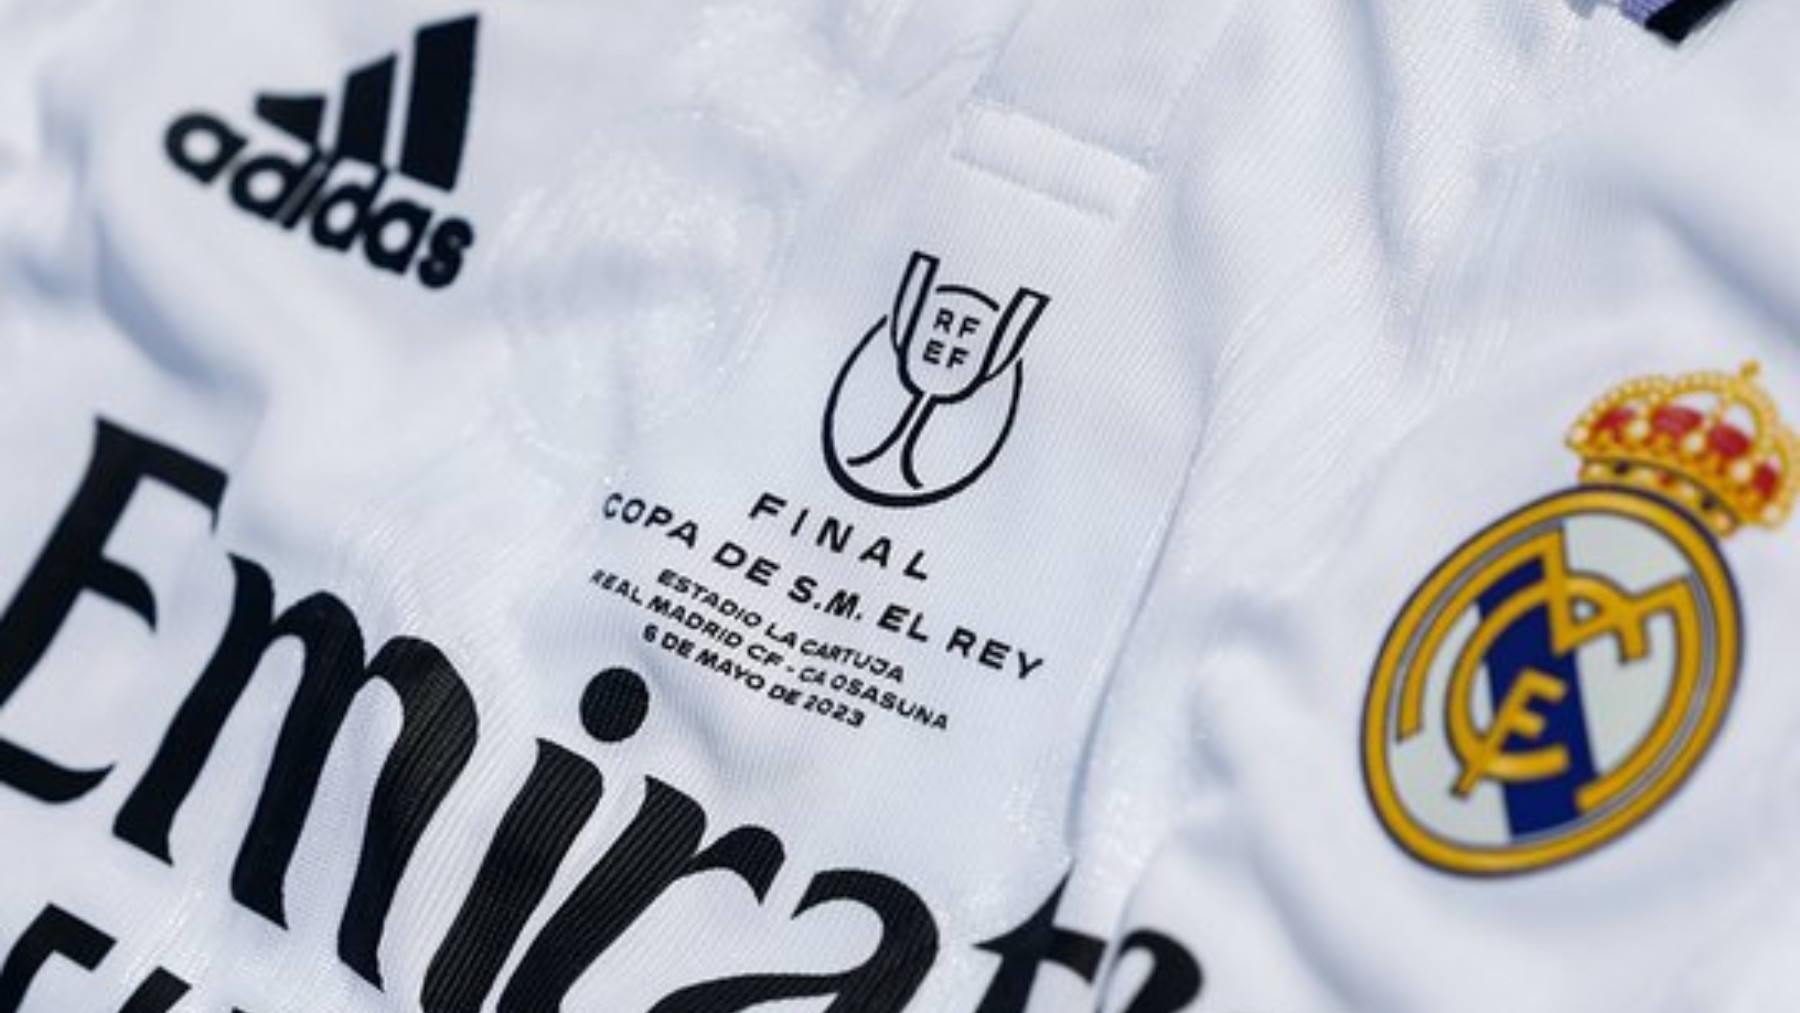 Confirmada la camiseta que lucirá el Real Madrid en la final - AS